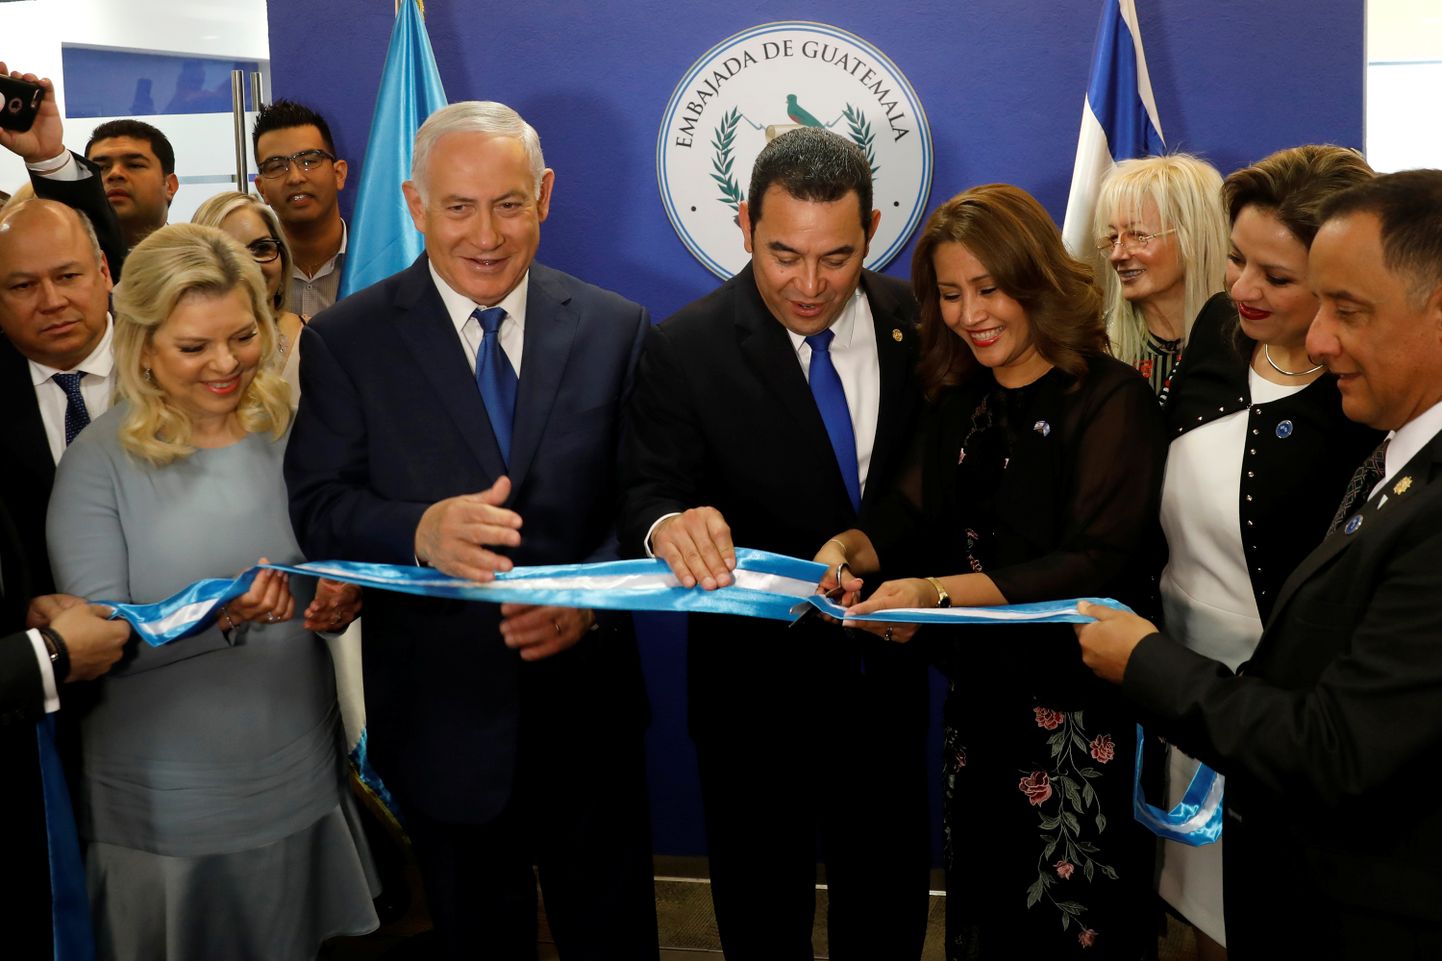 Guatemala presidendi abikaasa Hilda Patricia Marroquin saatkonna avamisel linti läbi lõikamas. Kõrval seisavad president Jimmy Morales ja Iisraeli peaminister Benjamin Netanyahu.